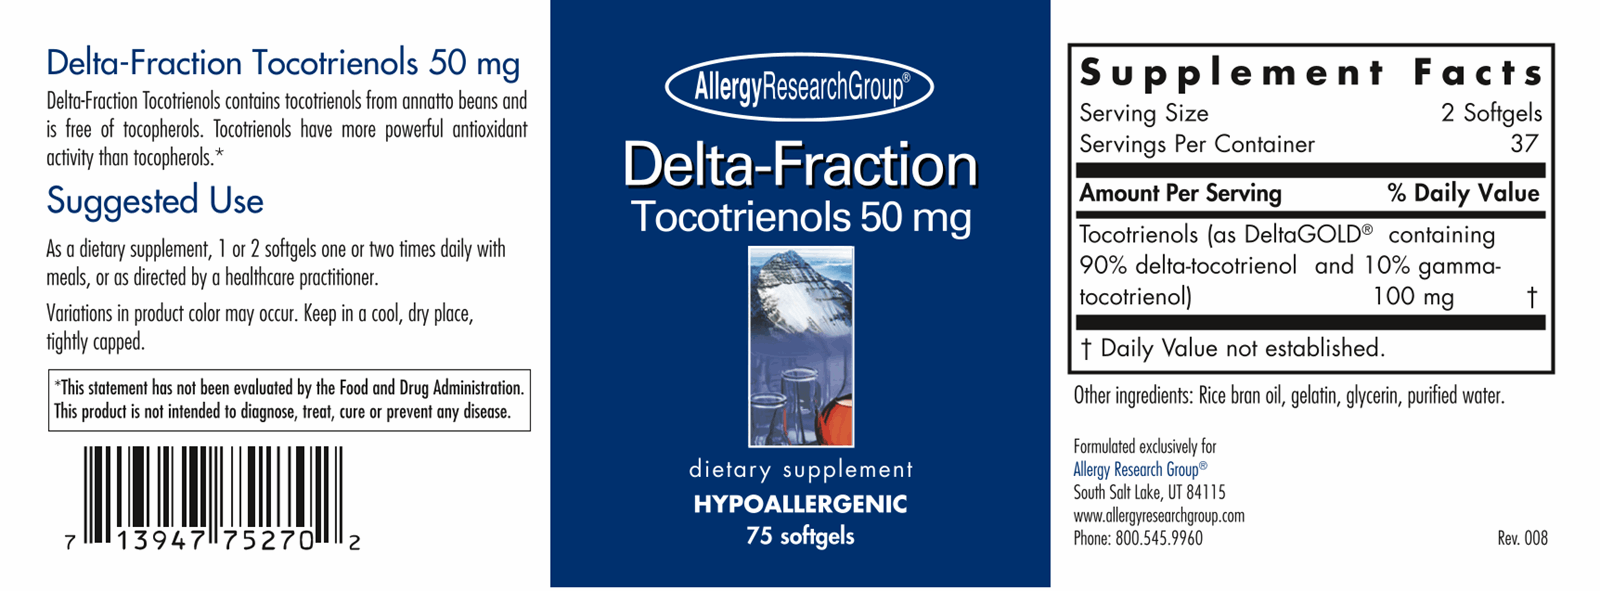 Delta-Fraction Tocotrienols 50 mg 